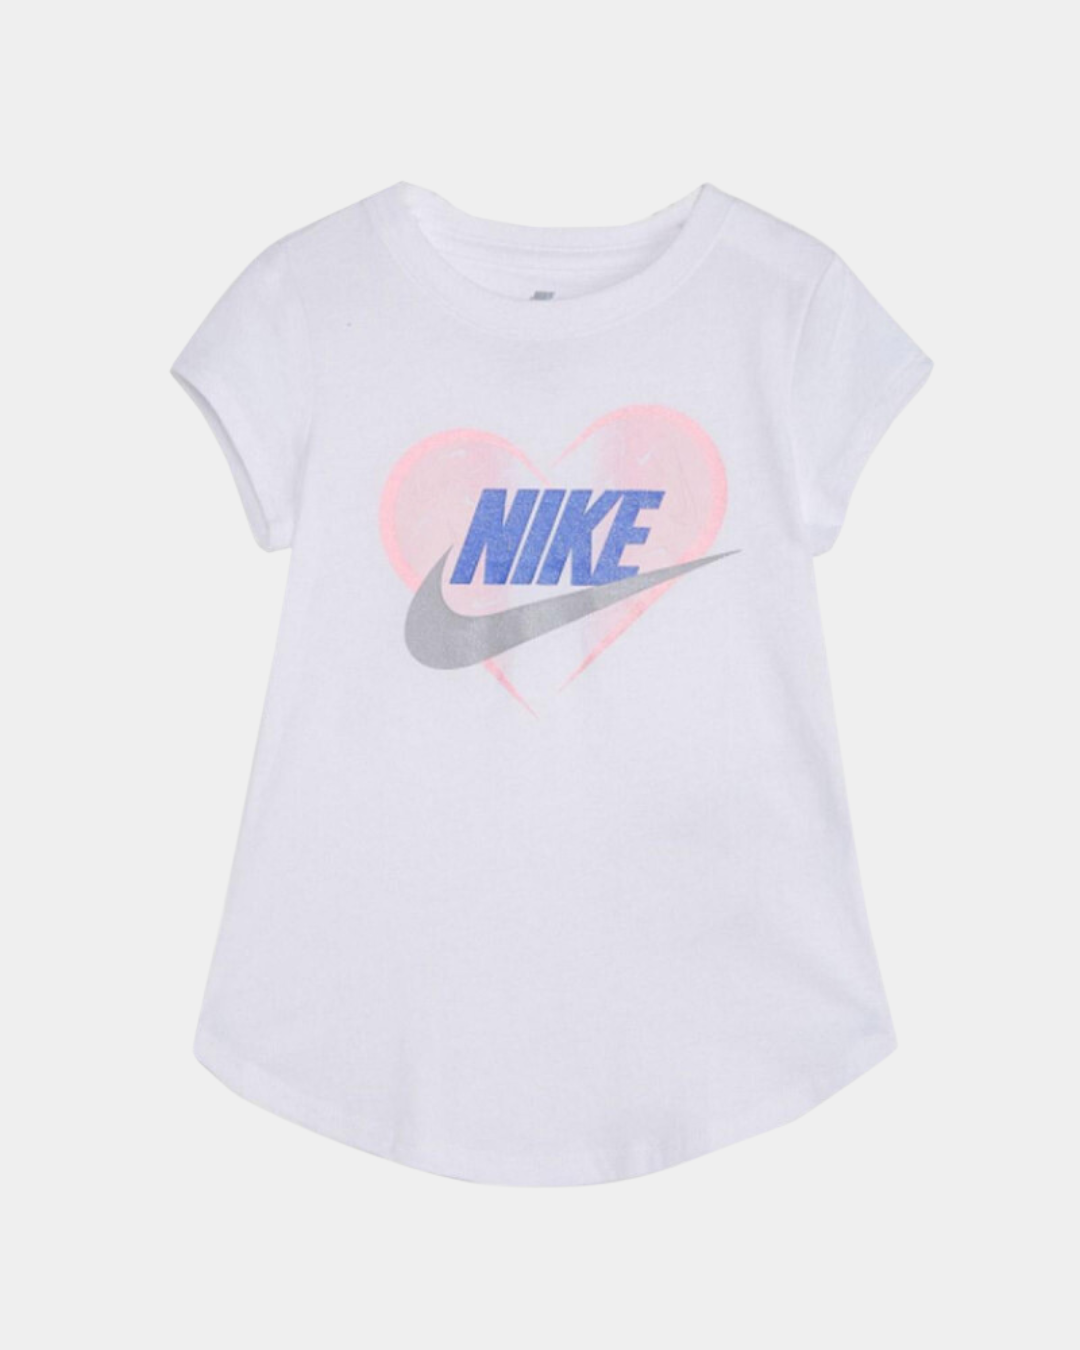 Nike Kids T-Shirt - White/Pink/Blue